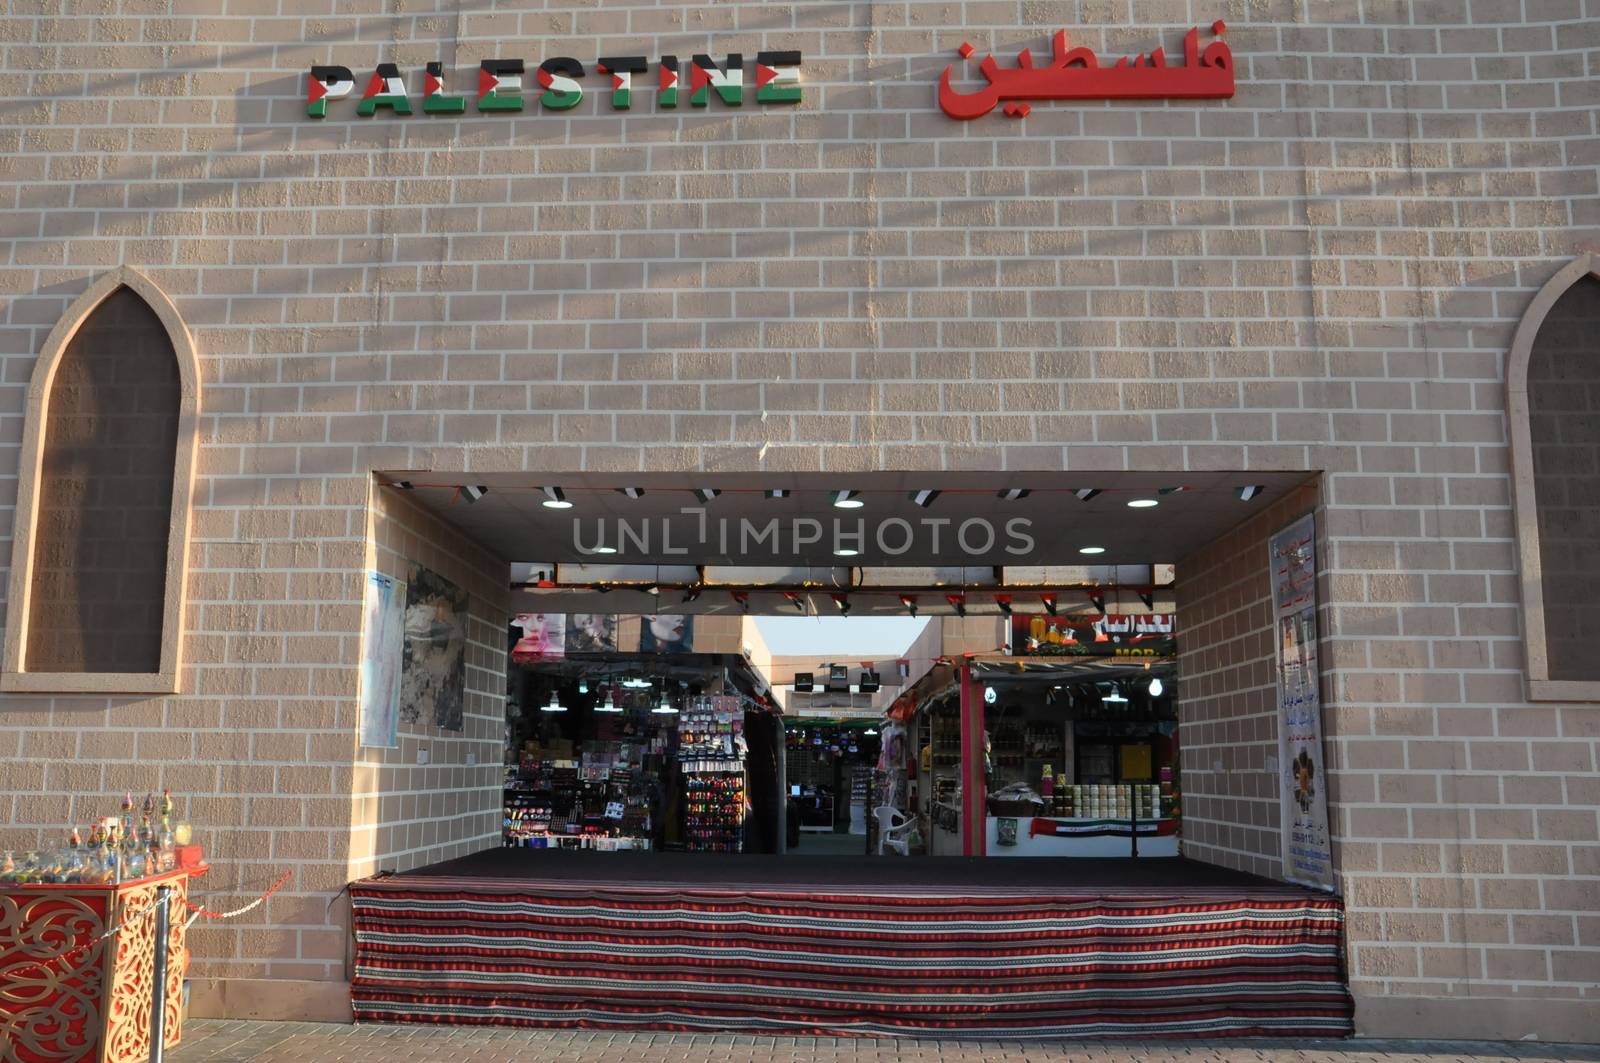 Palestine pavilion at Global Village in Dubai, UAE by sainaniritu